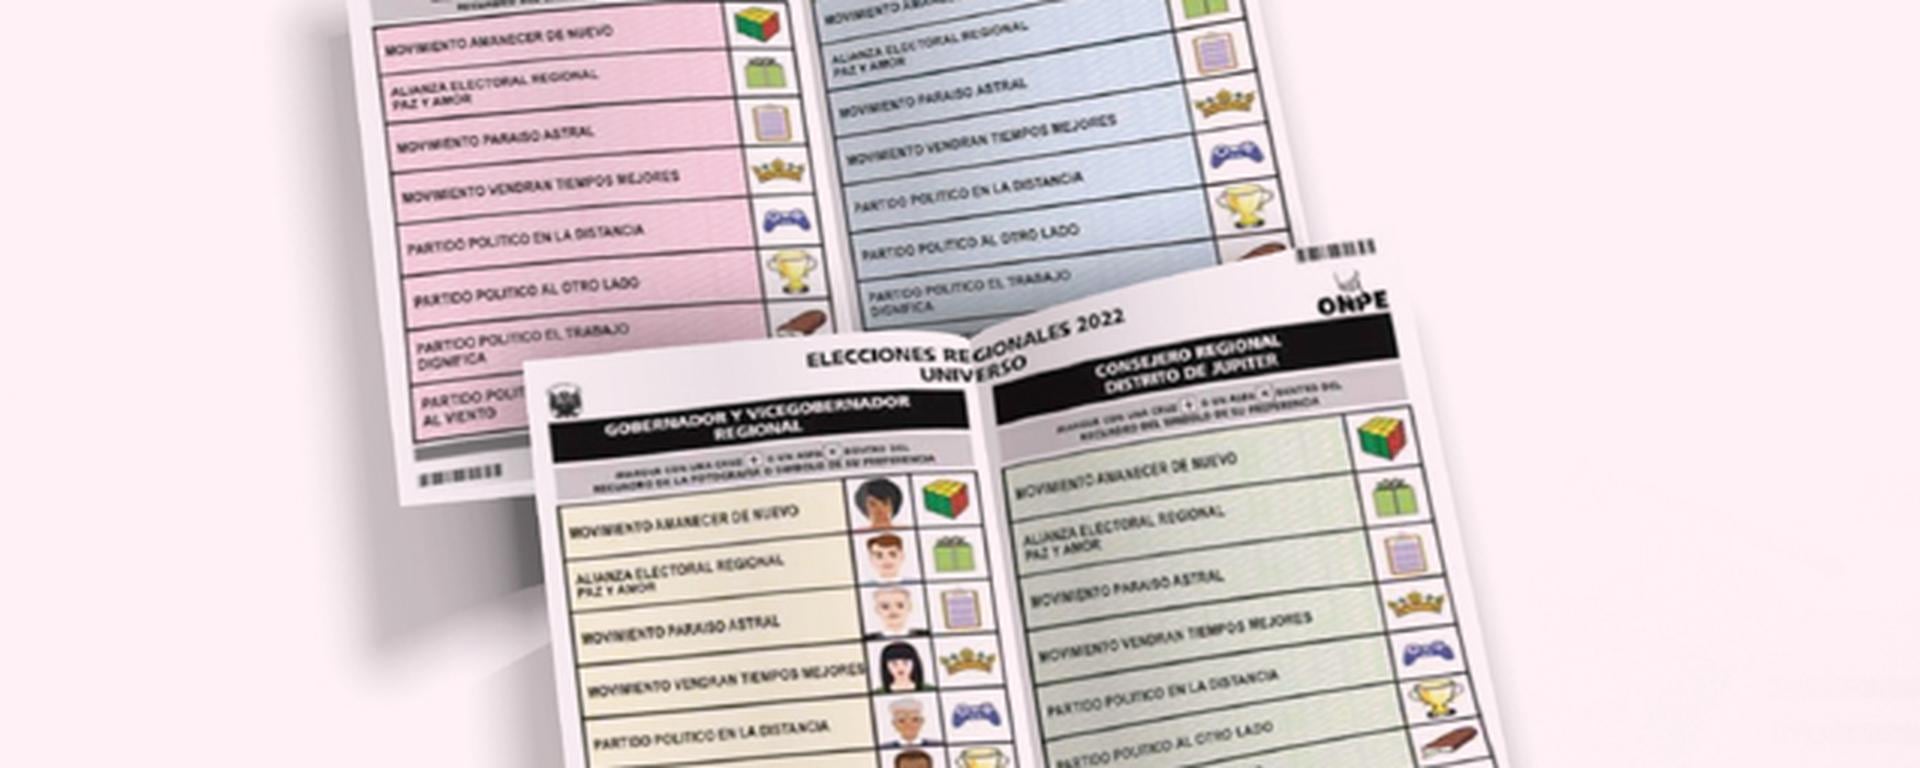 Elecciones 2022: las claves para la votación en un proceso que se calienta lentamente